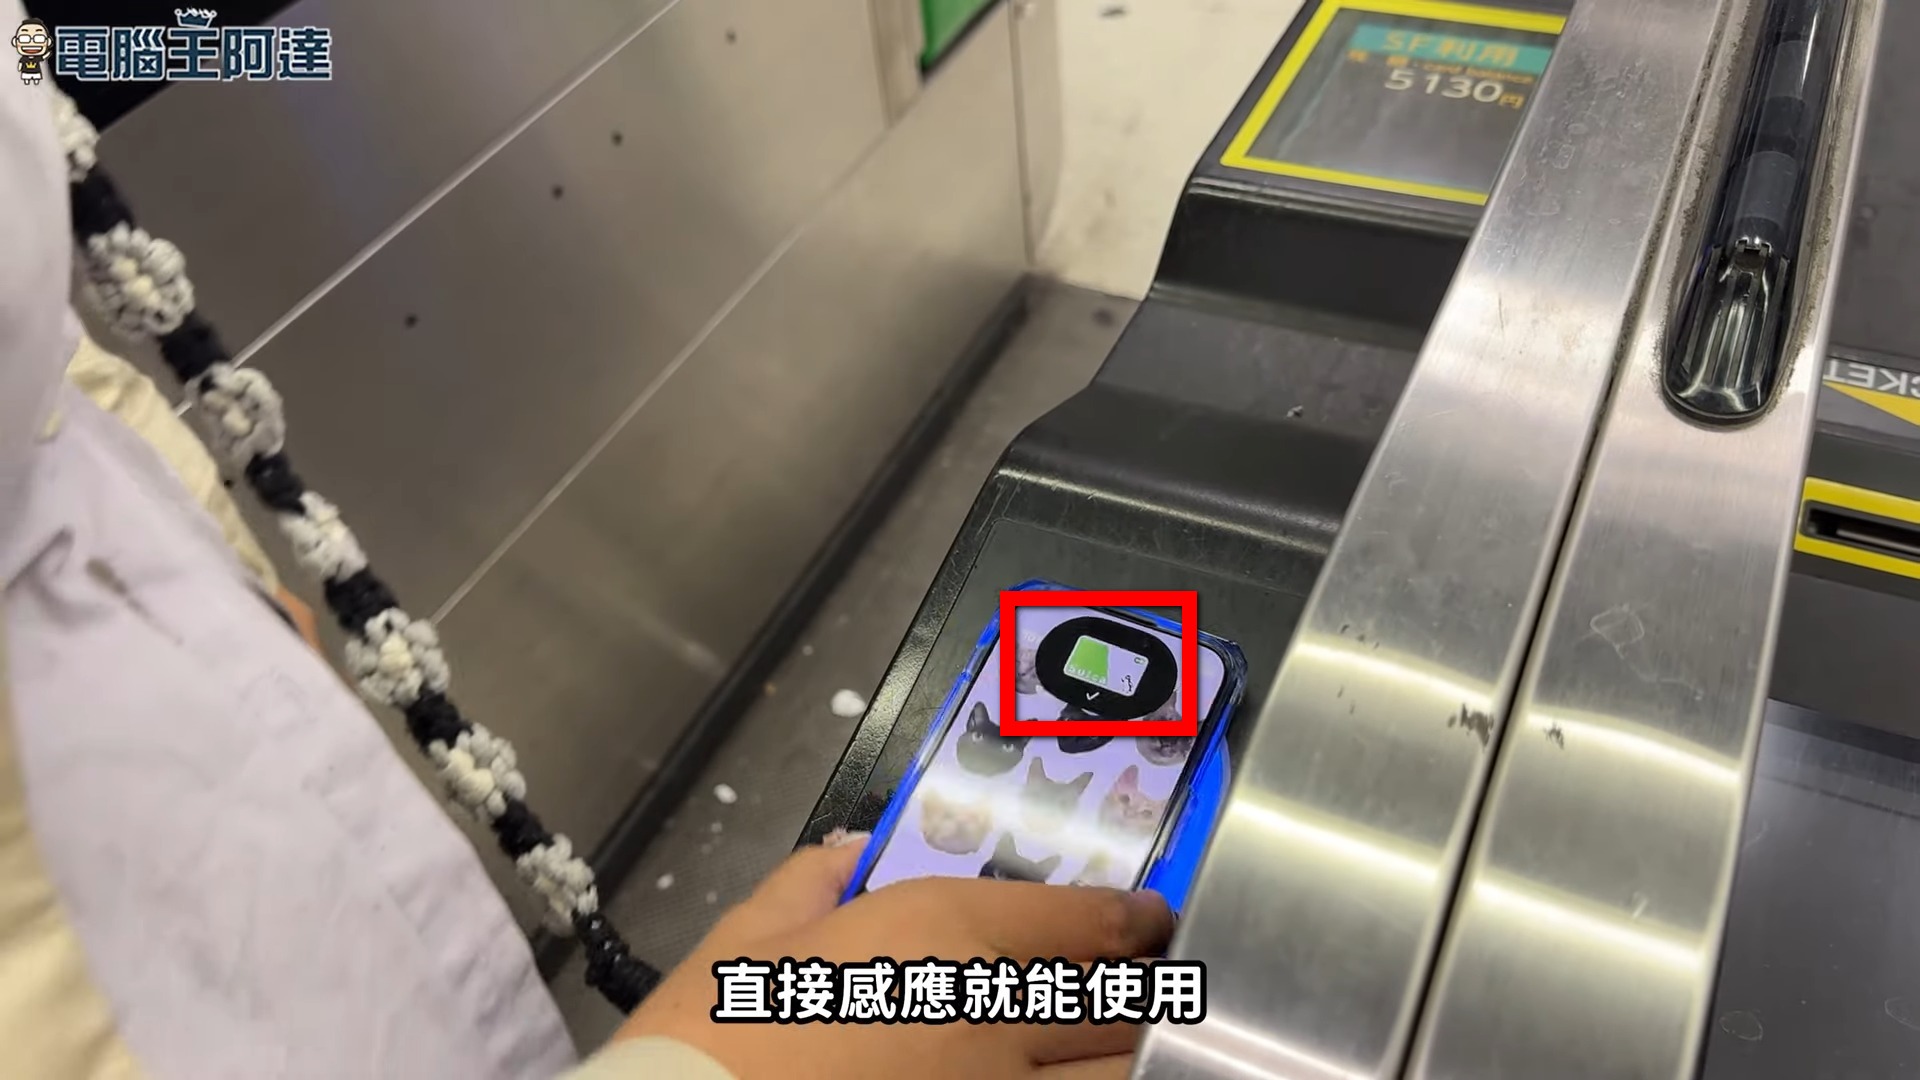 遊日本免買實體西瓜卡！教你如何在 iPhone 直接設定 Suica Card 扣款 - 電腦王阿達